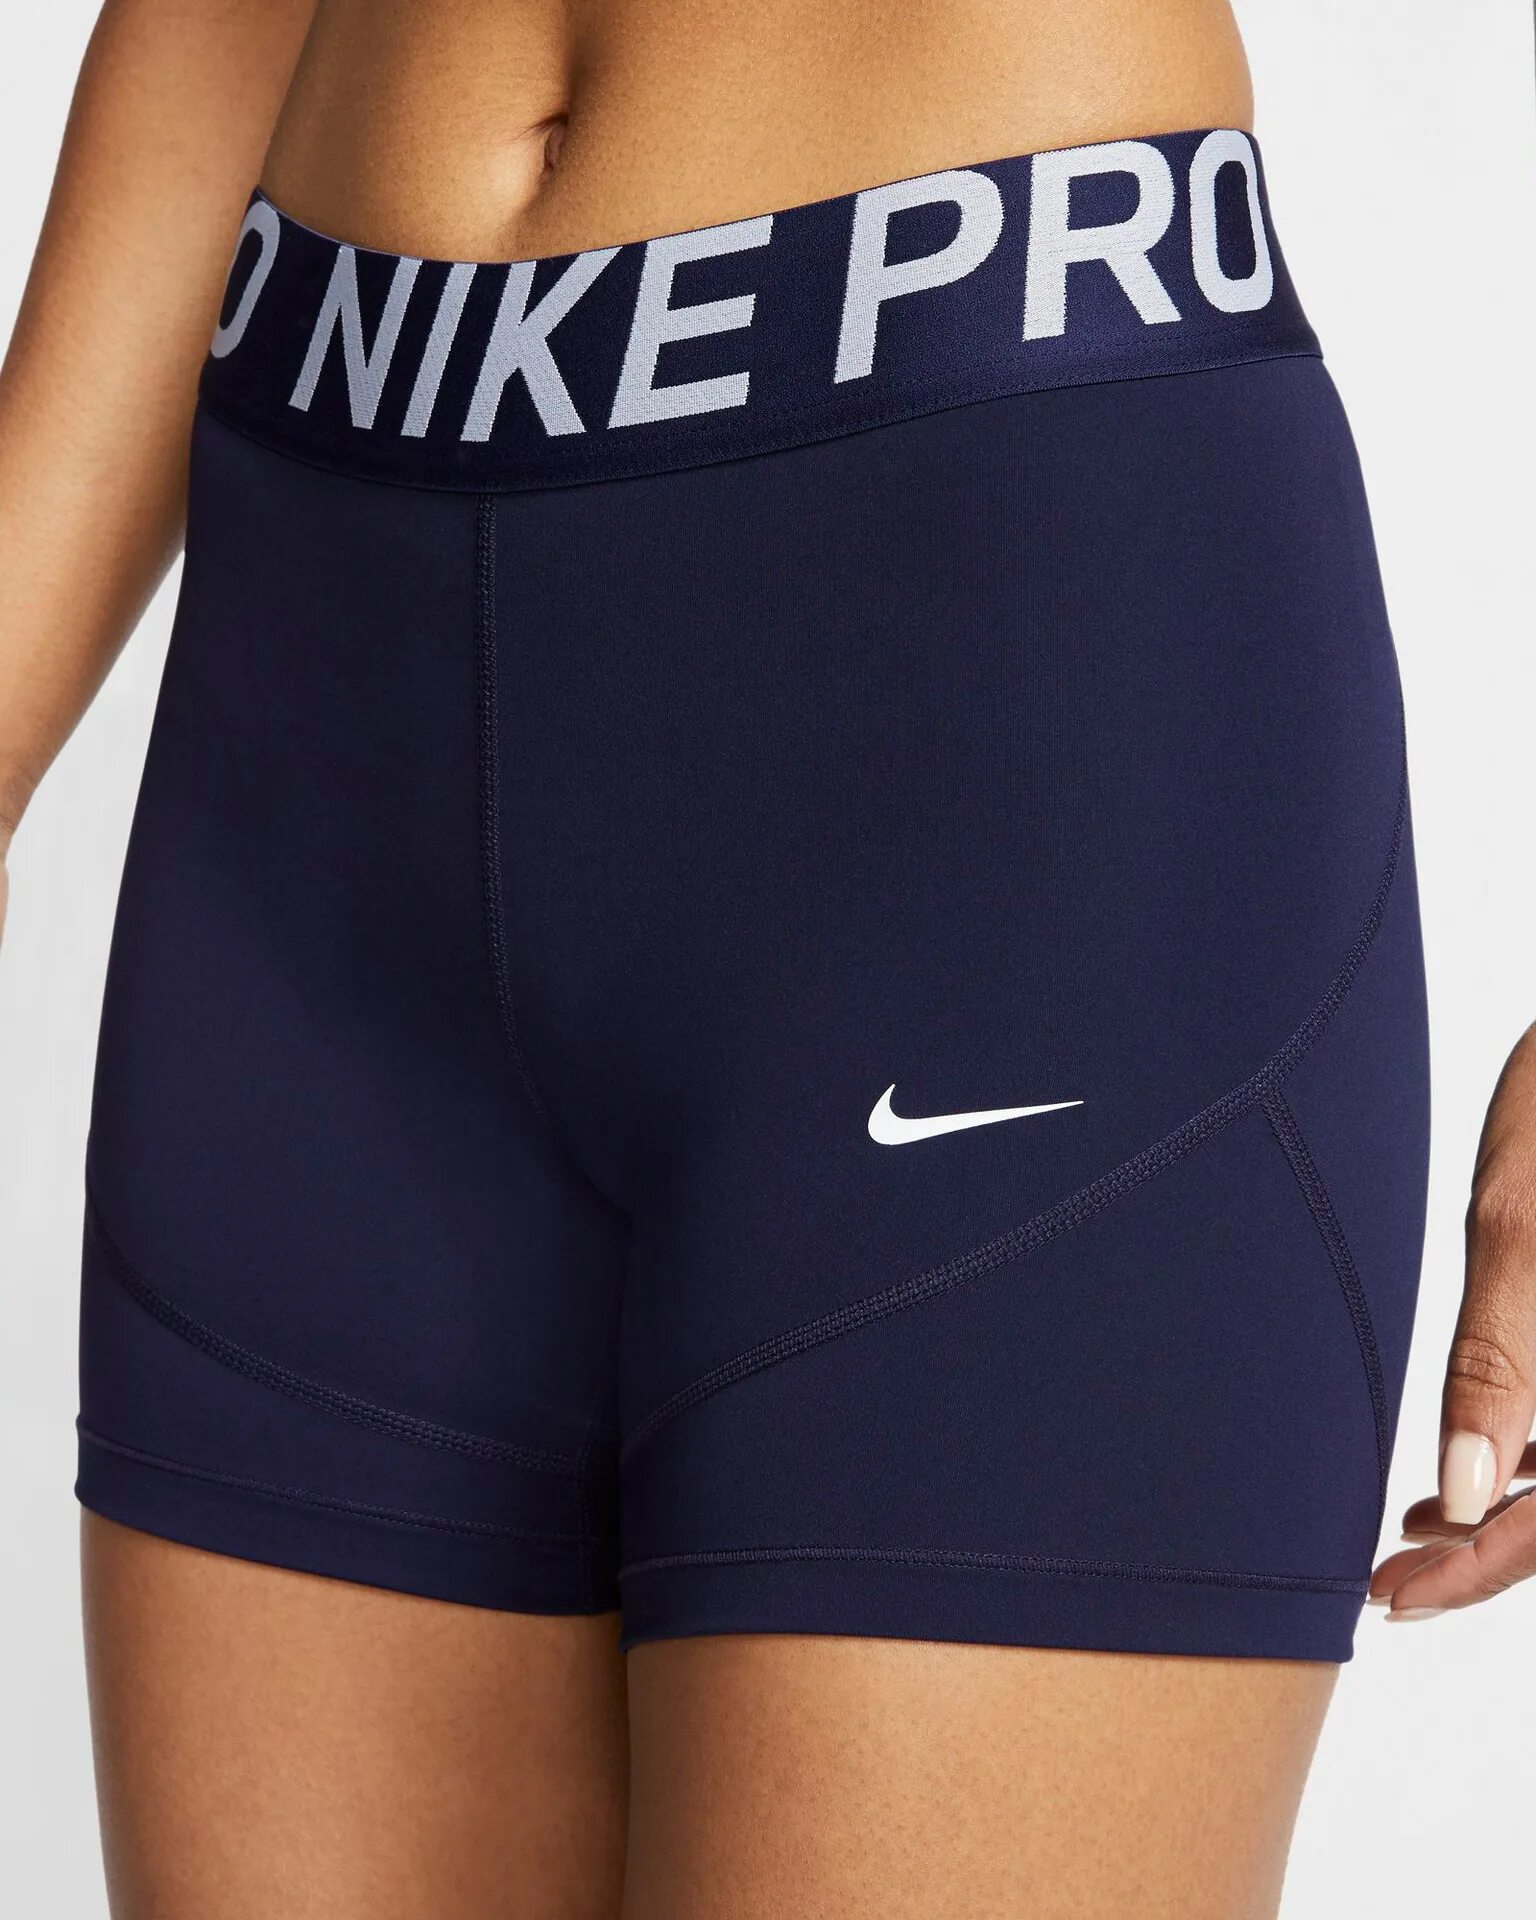 Nike Pro shorts. Nike Pro 365. Nike Pro 884500801905. Nike Pro 18. Шорты найк про